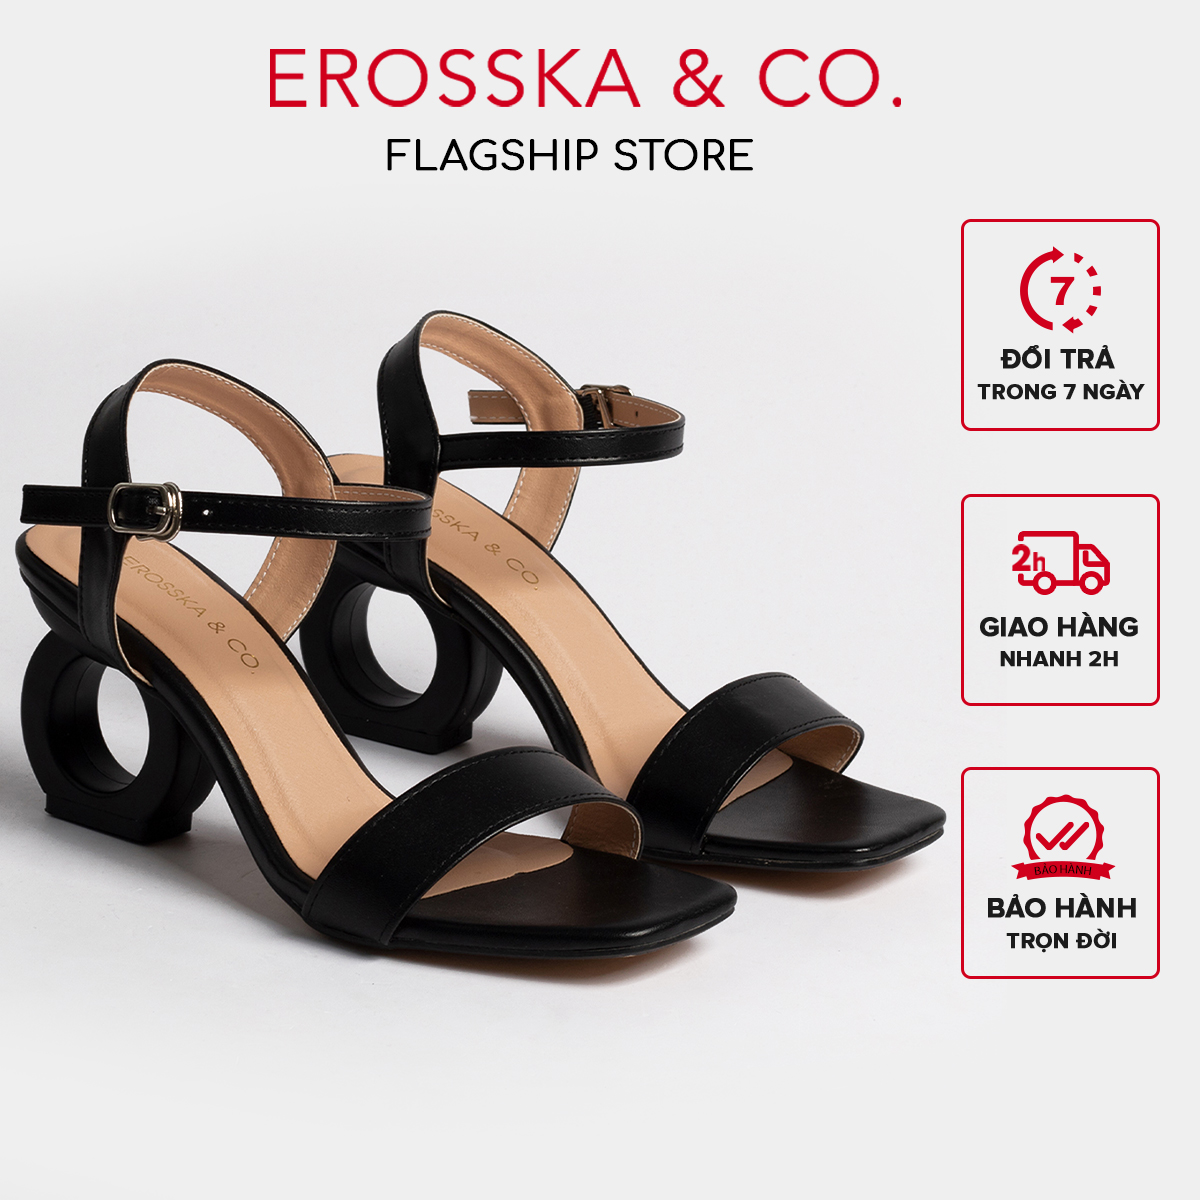 Giày cao gót vuông thời trang Erosska hở gót quai hậu tinh tế cao 5cm màu đen - EB009